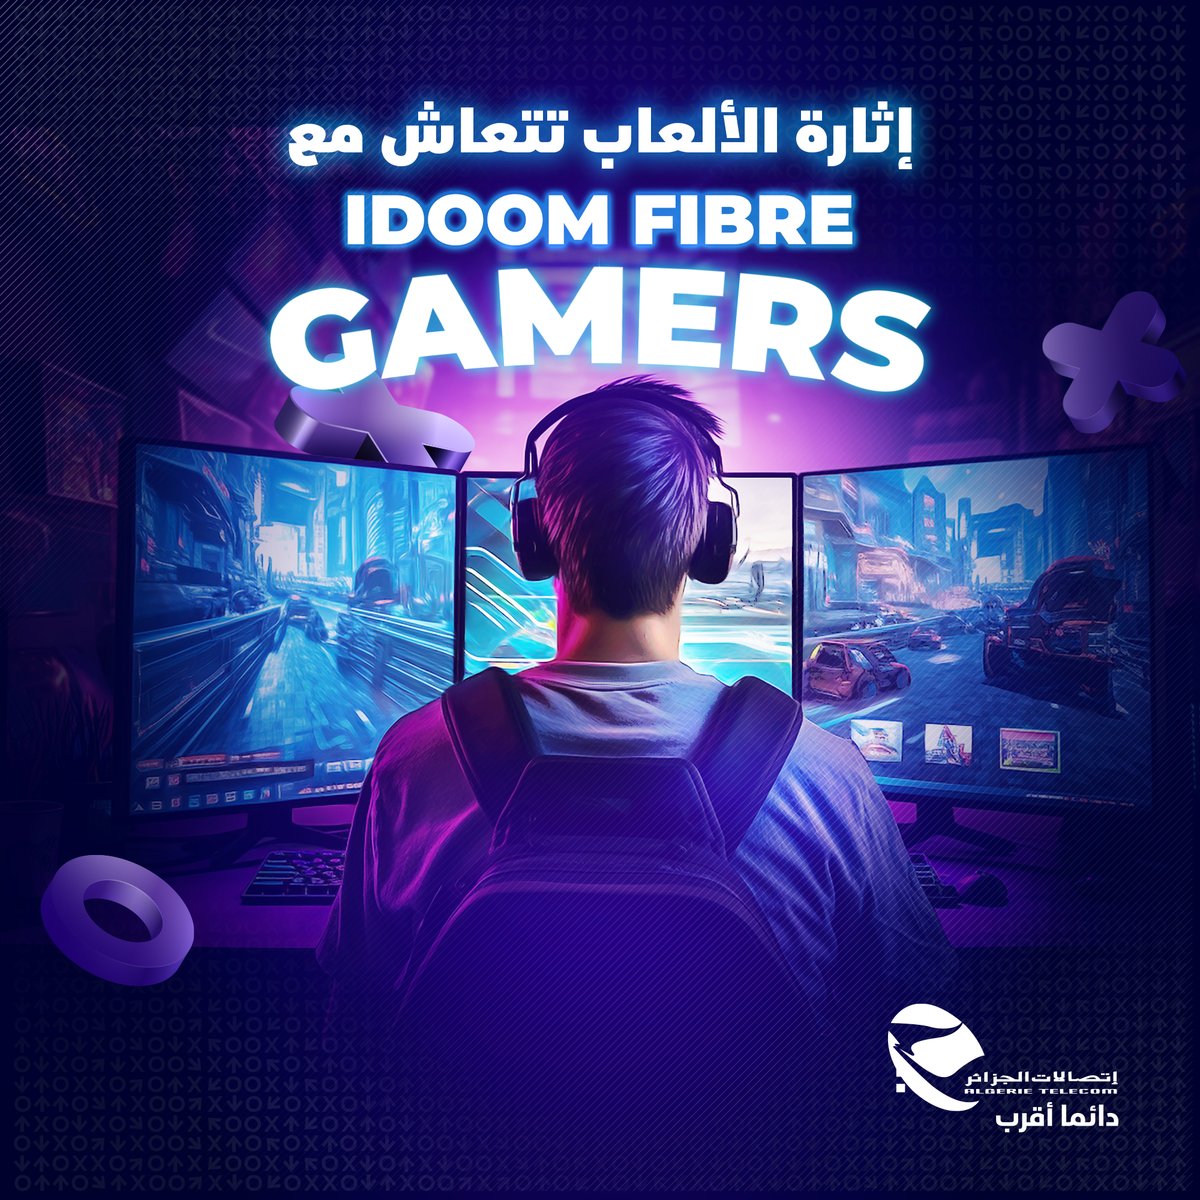 جماعة Stream، League of Legends و Counter Strike…🕹 عرض IDOOM FIBRE GAMERS مخصص ليكم بـping منخفض⬇، débit عالي⬆ و بأسعار إستثنائية 🤩 📌معلومات أكثر على موقعنا: algerietelecom.dz/ar/particulier… #إتصالات_الجزائر #دائما_أقرب